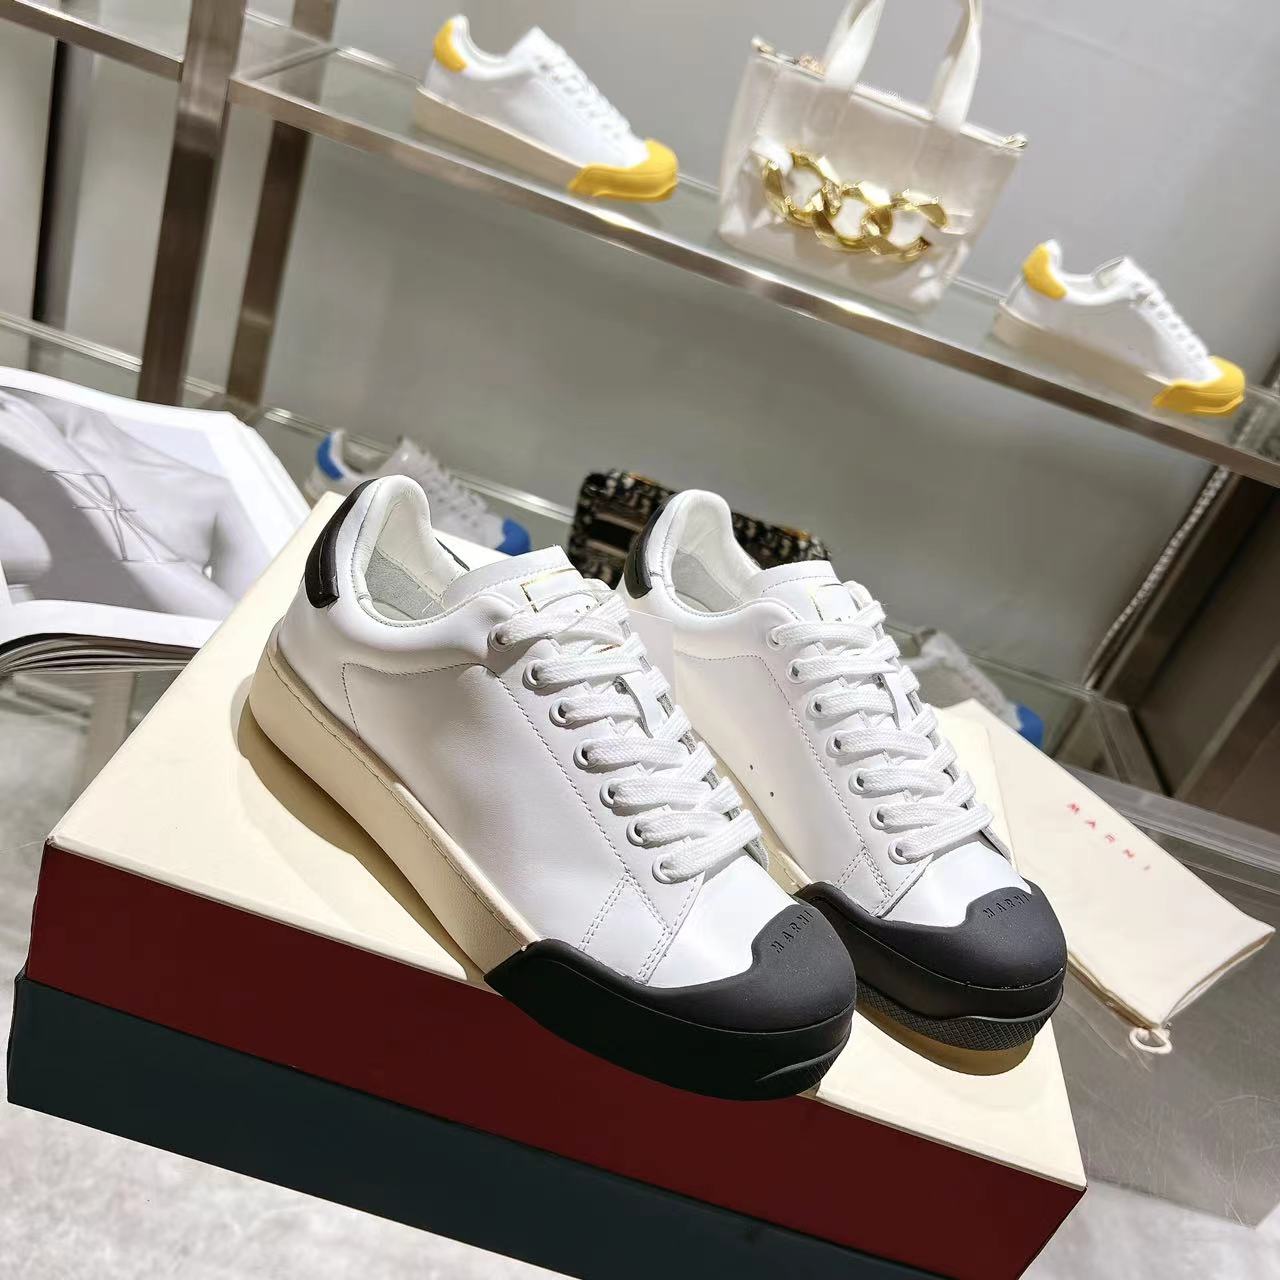 Marni Dada Bumper Sneaker In White And Black Leather - DesignerGu